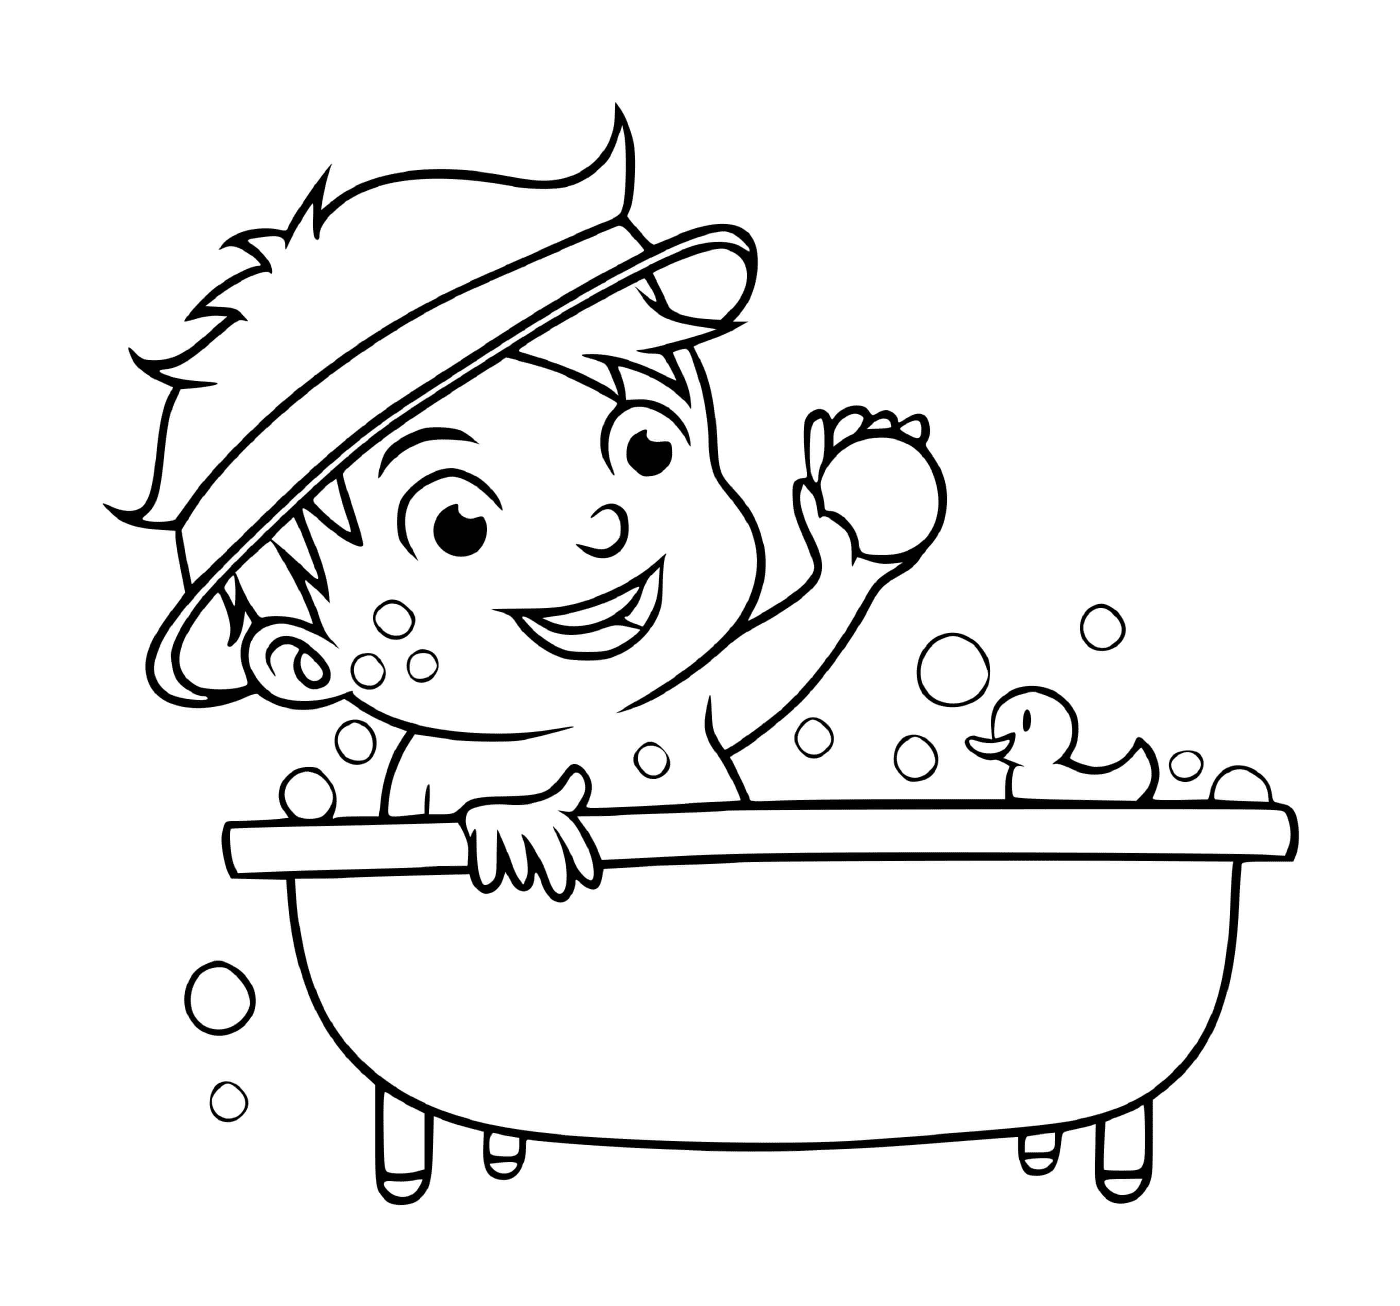  Ein Junge nimmt ein Bad, um sauber zu bleiben 